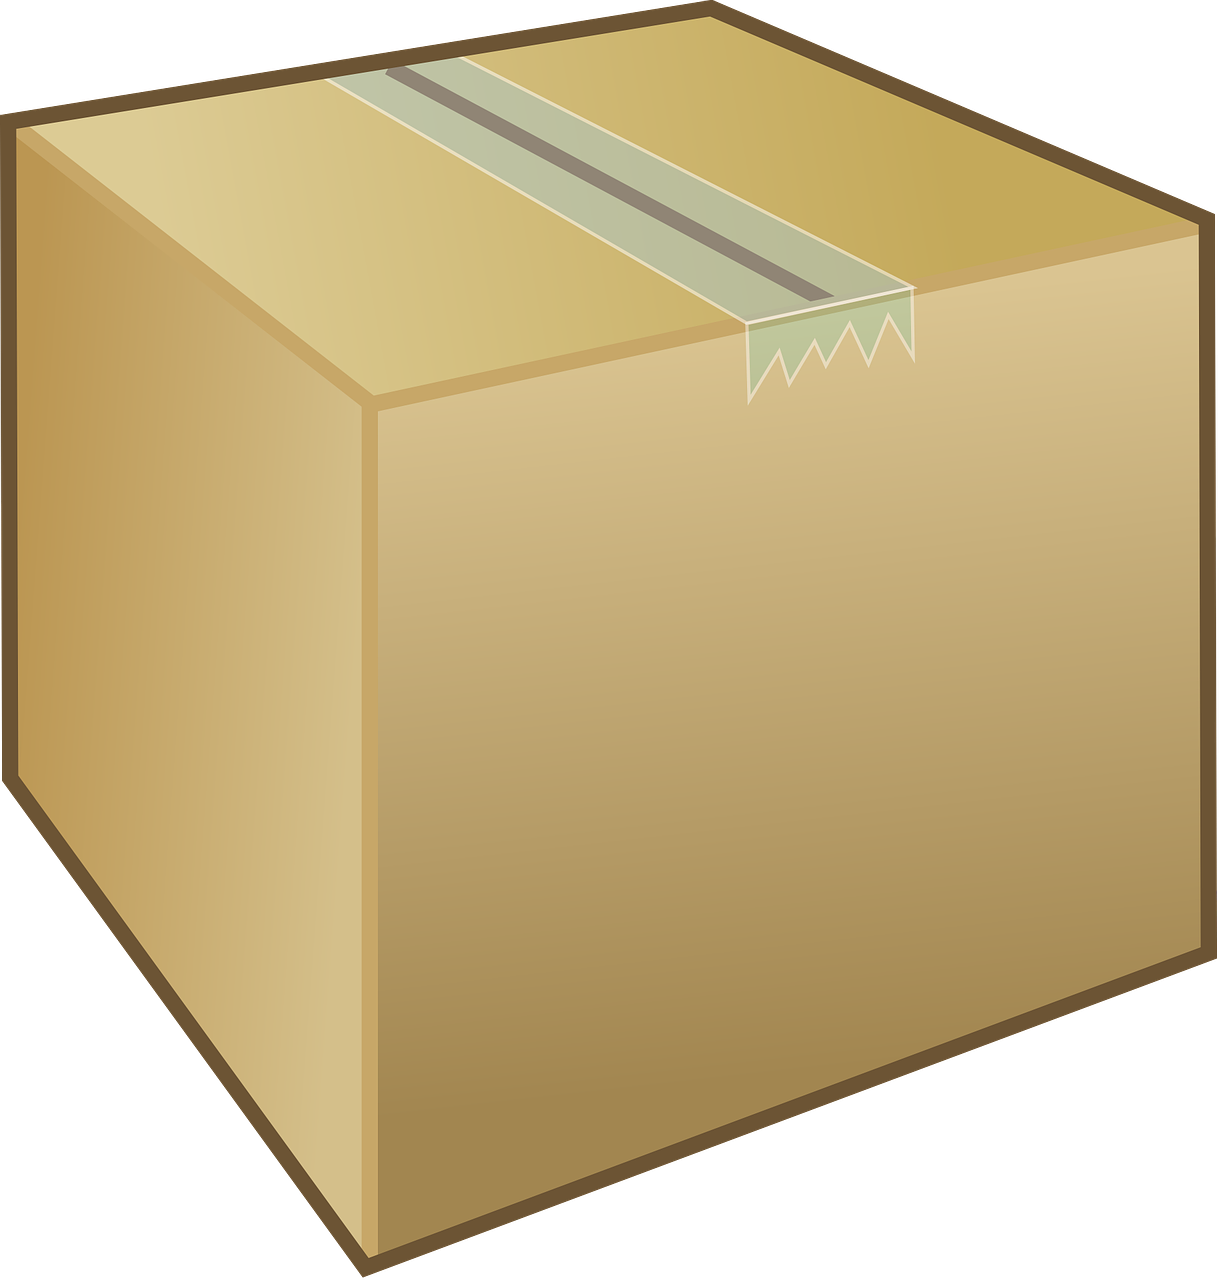 Transportez vos objets longs en toute sécurité avec notre caisse en carton spécialement conçue pour ce type d'articles